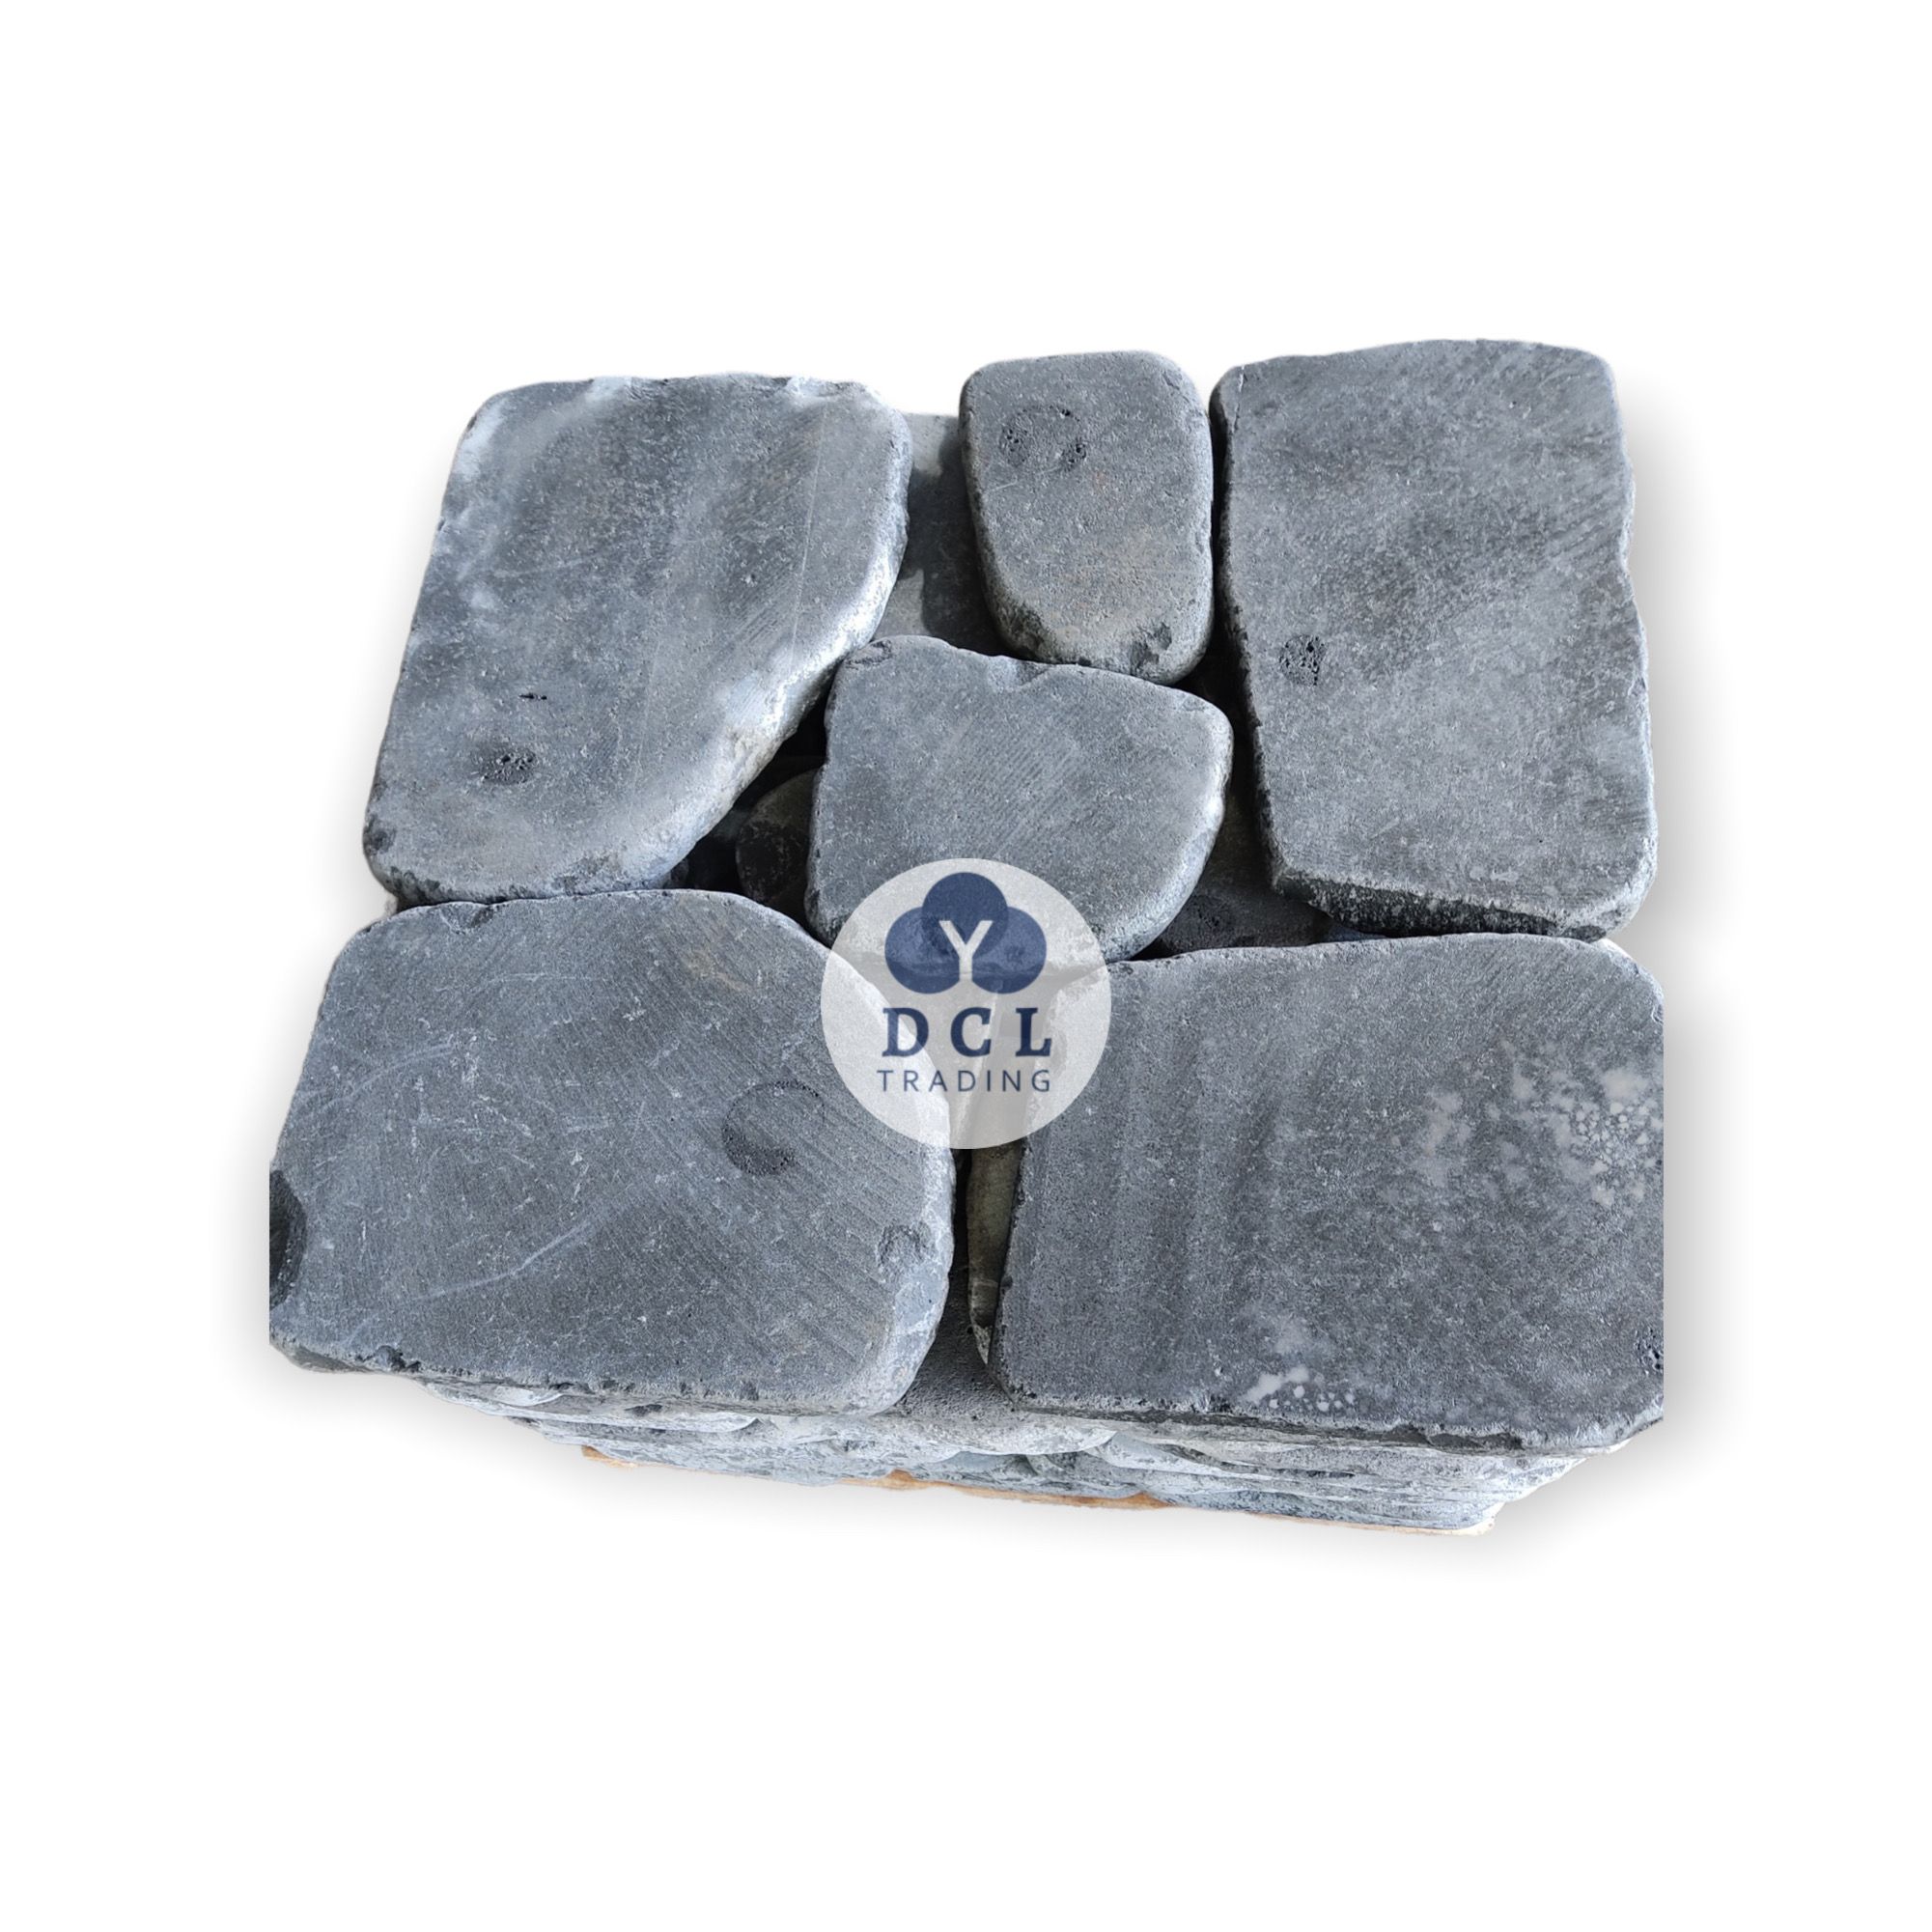  Basalt Stone Tumbled 6-7pcs 